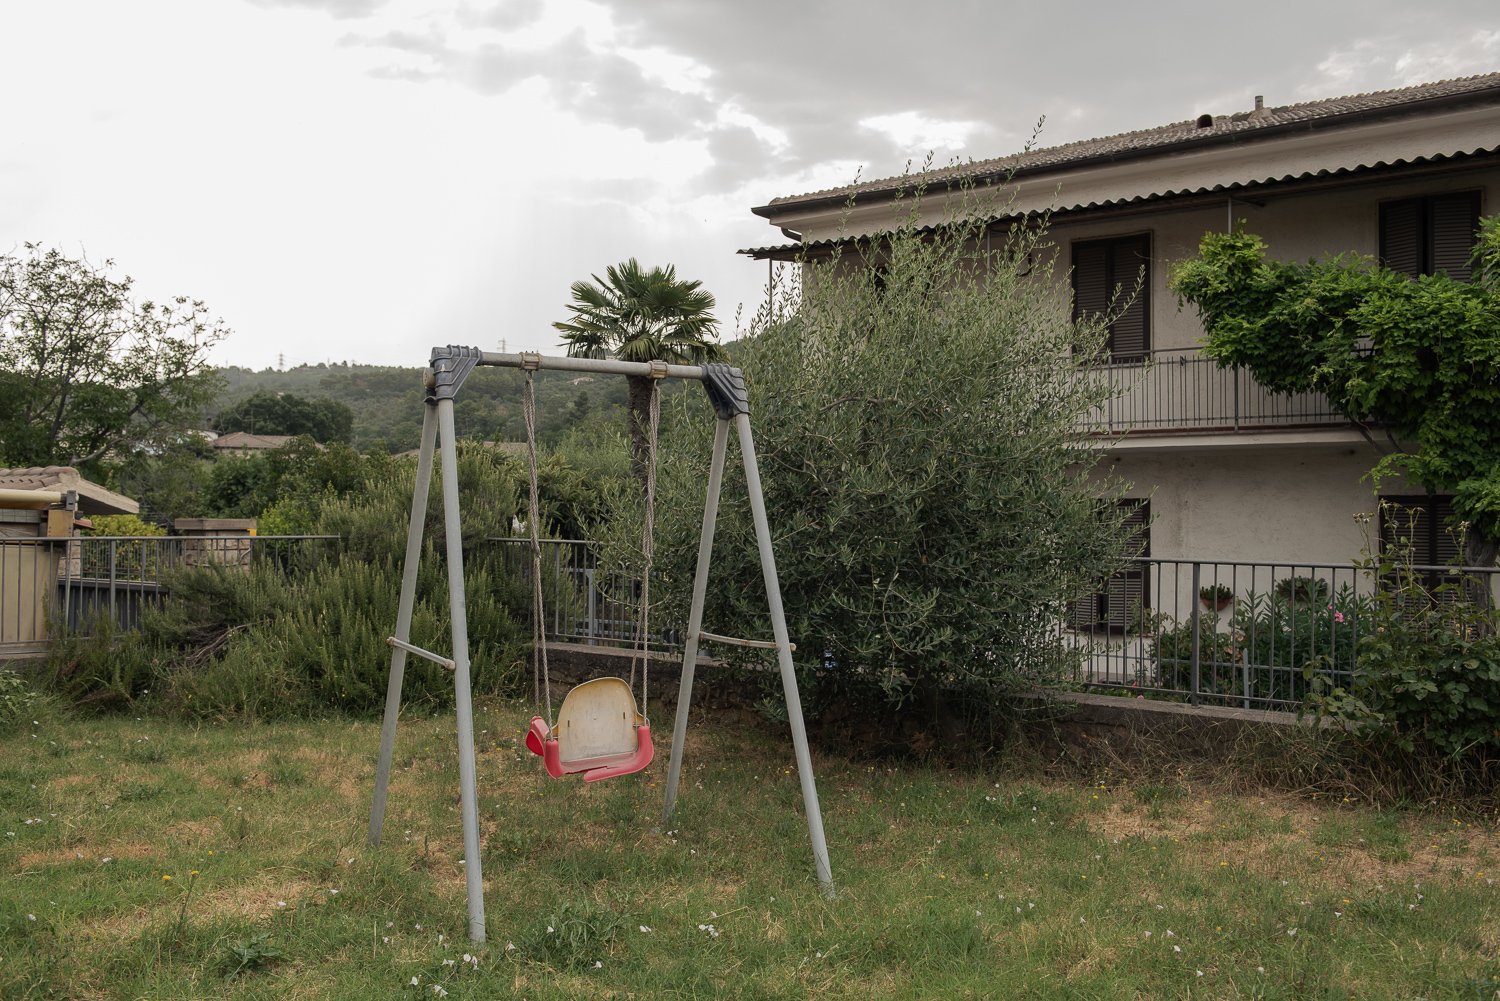  Altalena nel giardino incolto di una casa.Quartiere Prisciano, Terni (Terni), 2023. 